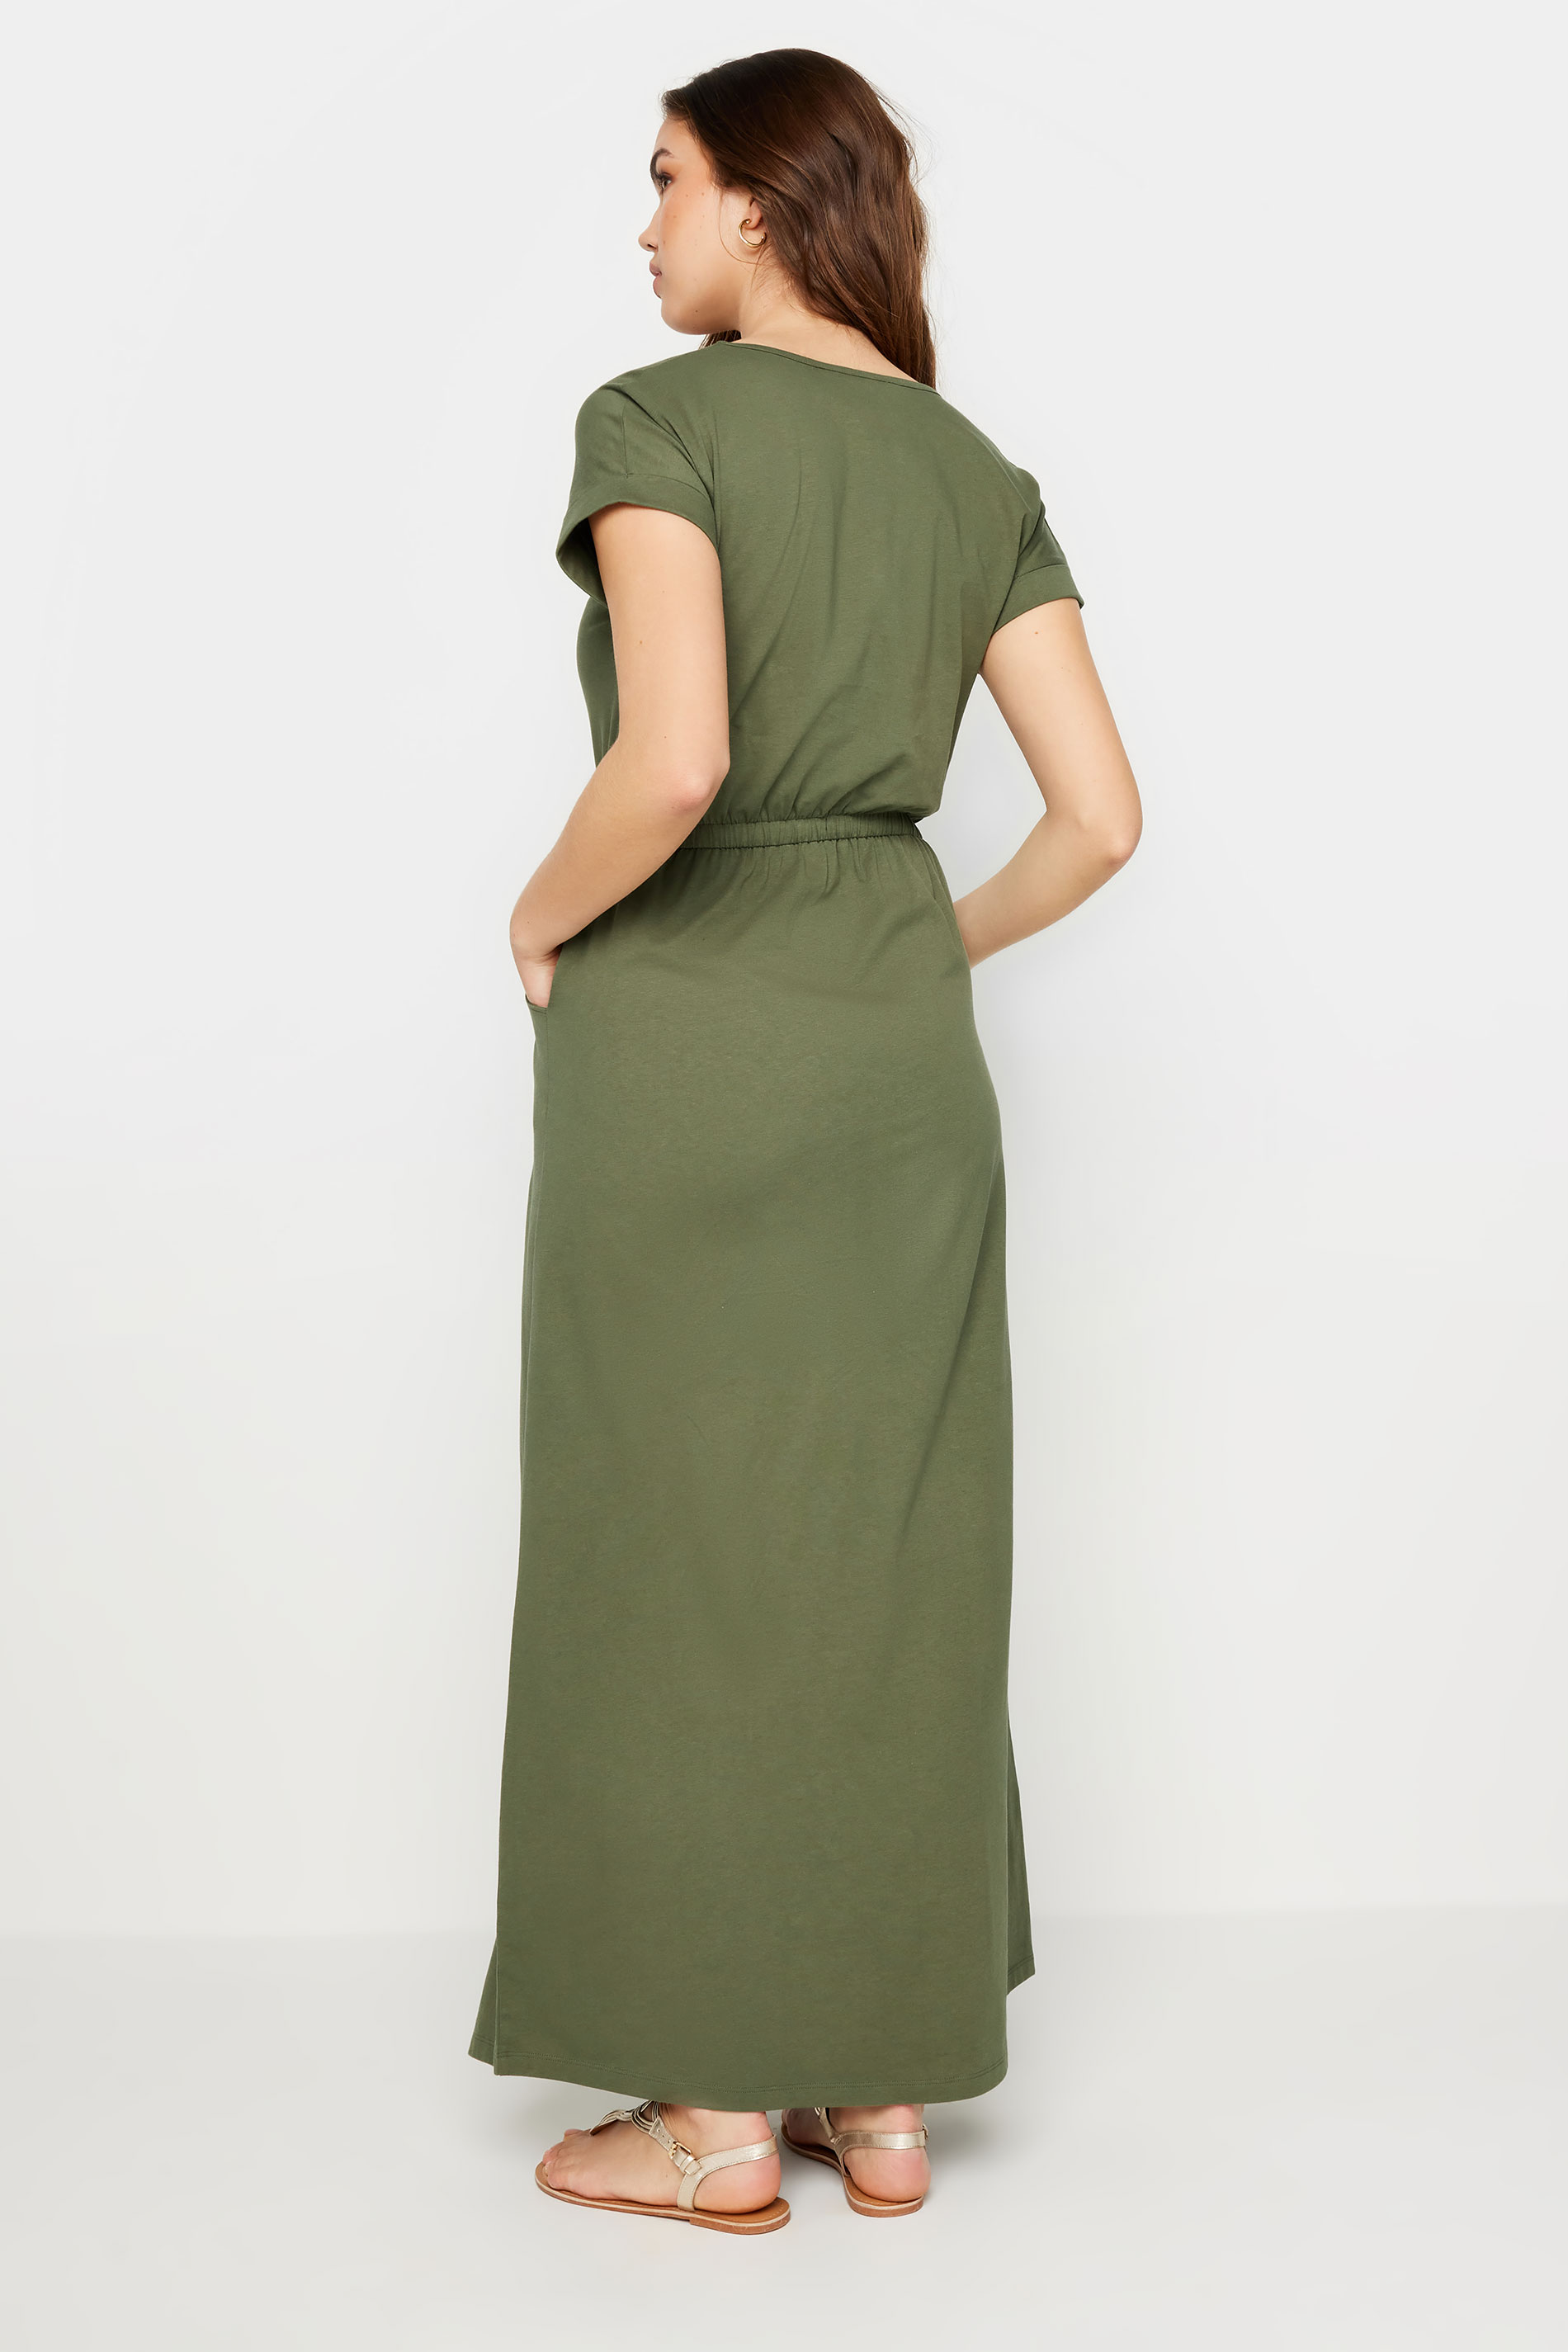 LTS Tall Women's Khaki Green Tie Waist Maxi T-Shirt Dress | Long Tall Sally 3